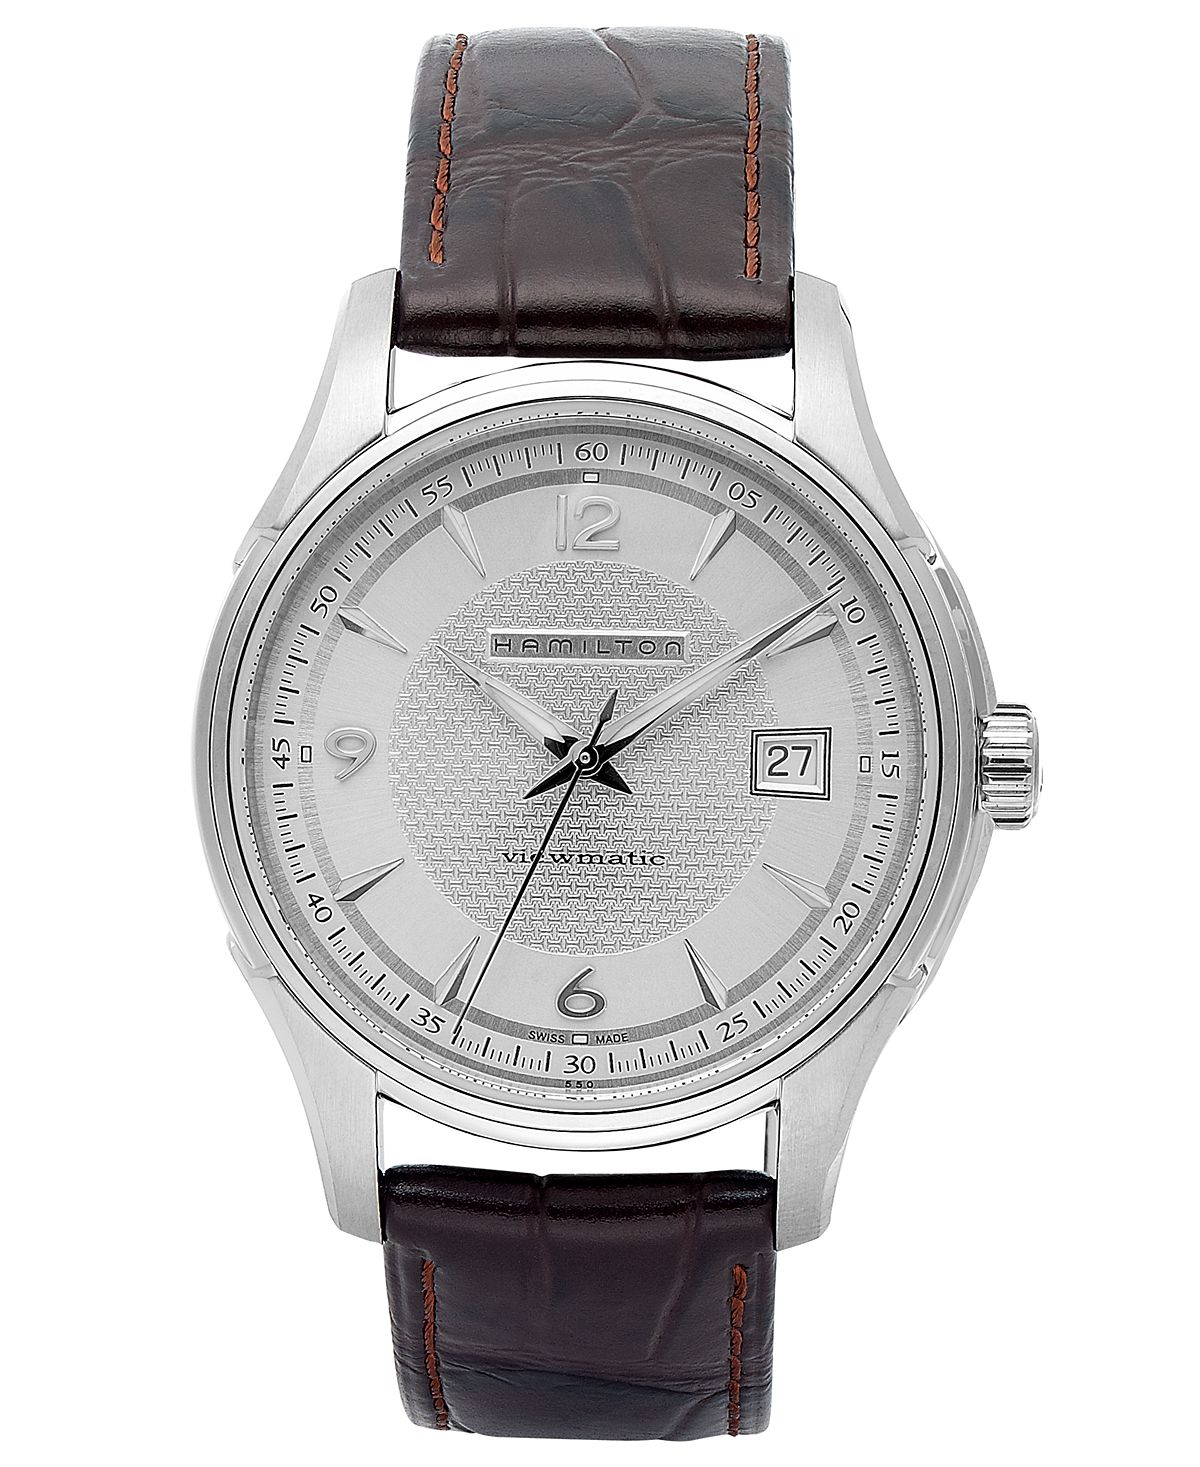 Мужские швейцарские автоматические часы Jazzmaster Viewmatic с коричневым кожаным ремешком 40 мм H32515555 Hamilton наручные часы hamilton jazzmaster chrono quartz